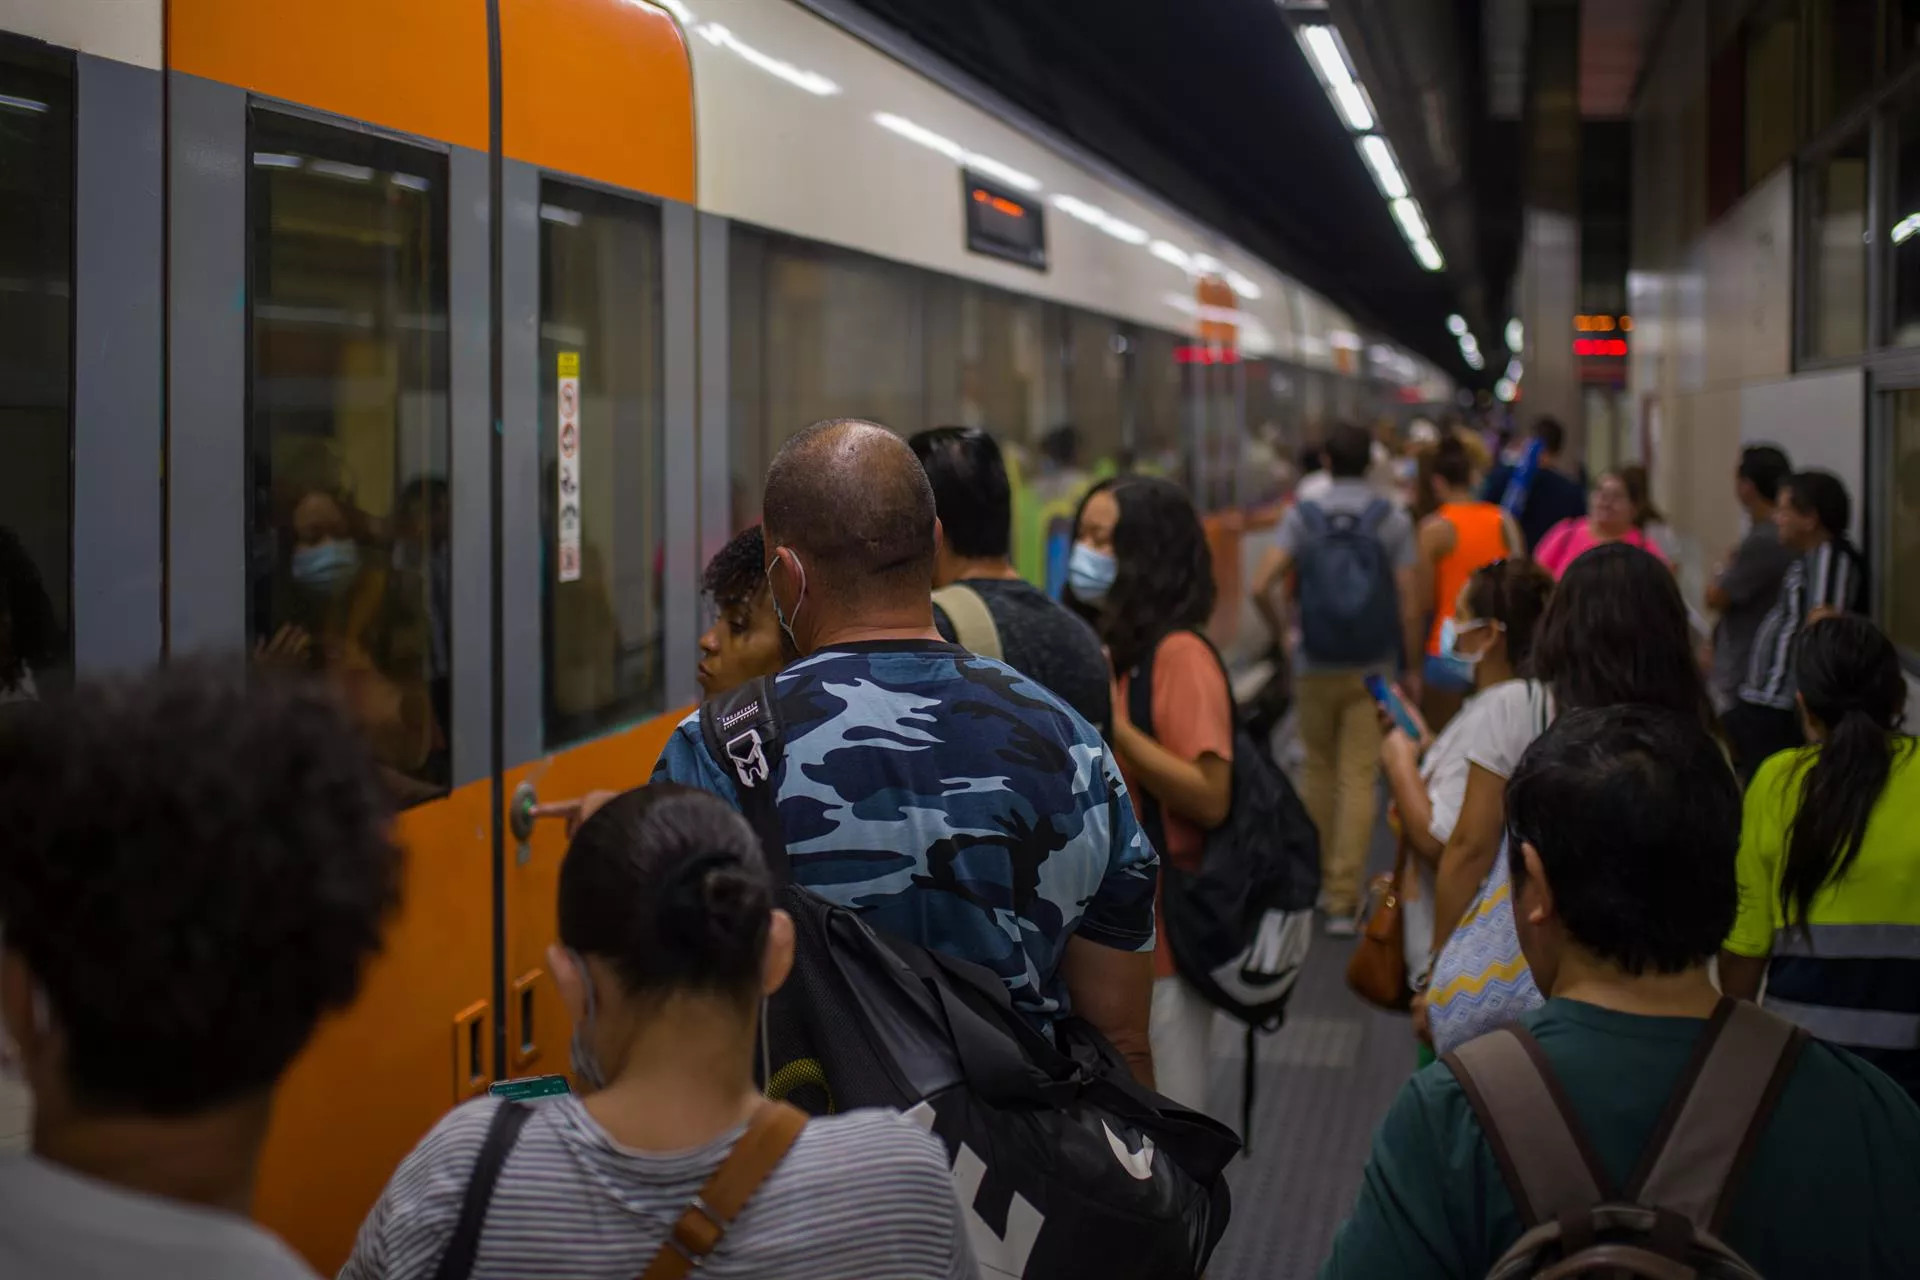 Viajeros suben a un tren en uno de los andenes de la estación de Sants / Lorena Sopena - EP